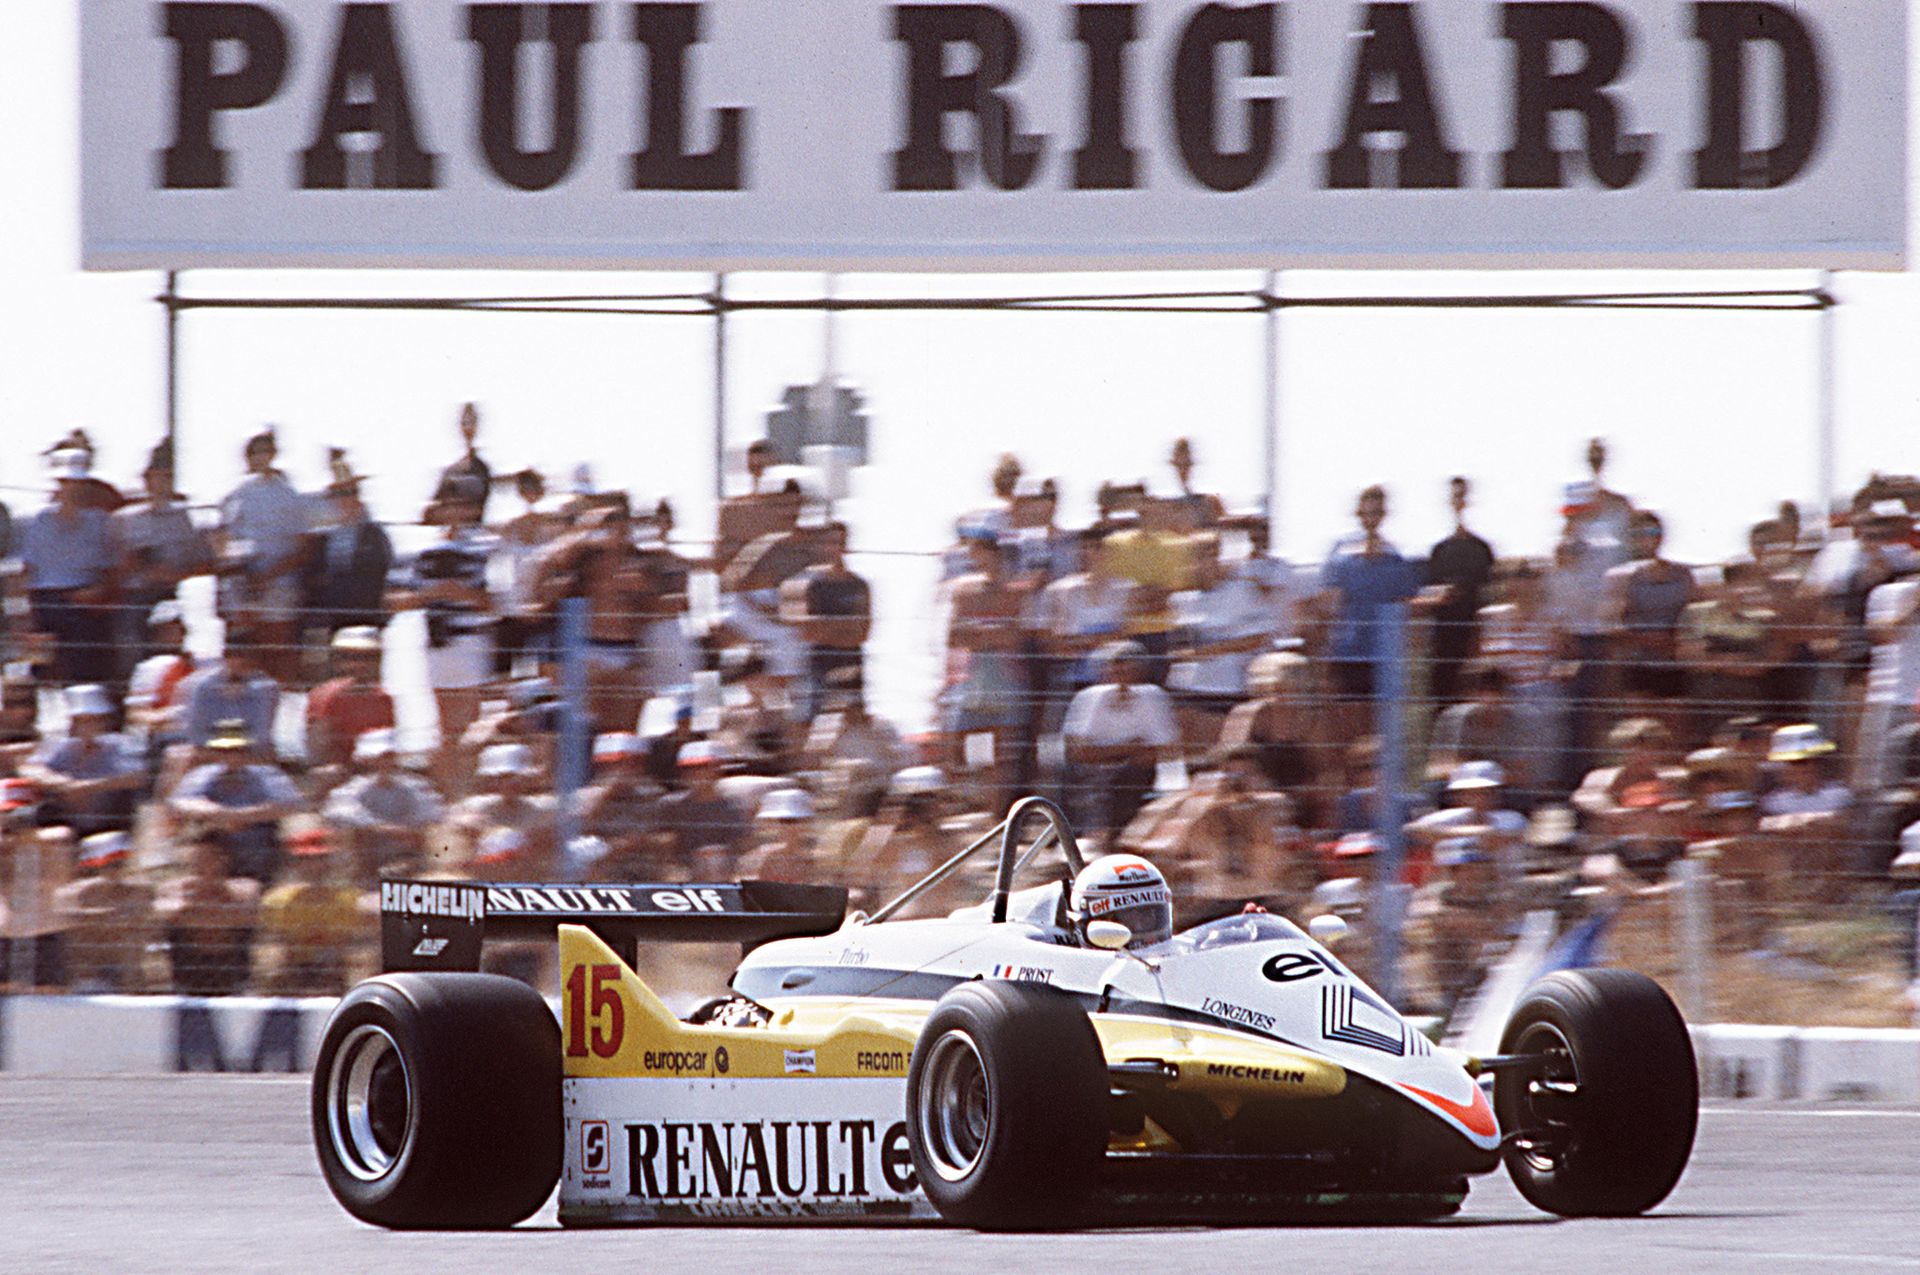 lain Prost au volant de sa monoplace Renault lors du Grand Prix de France sur le circuit Paul Ricard dans les années 80